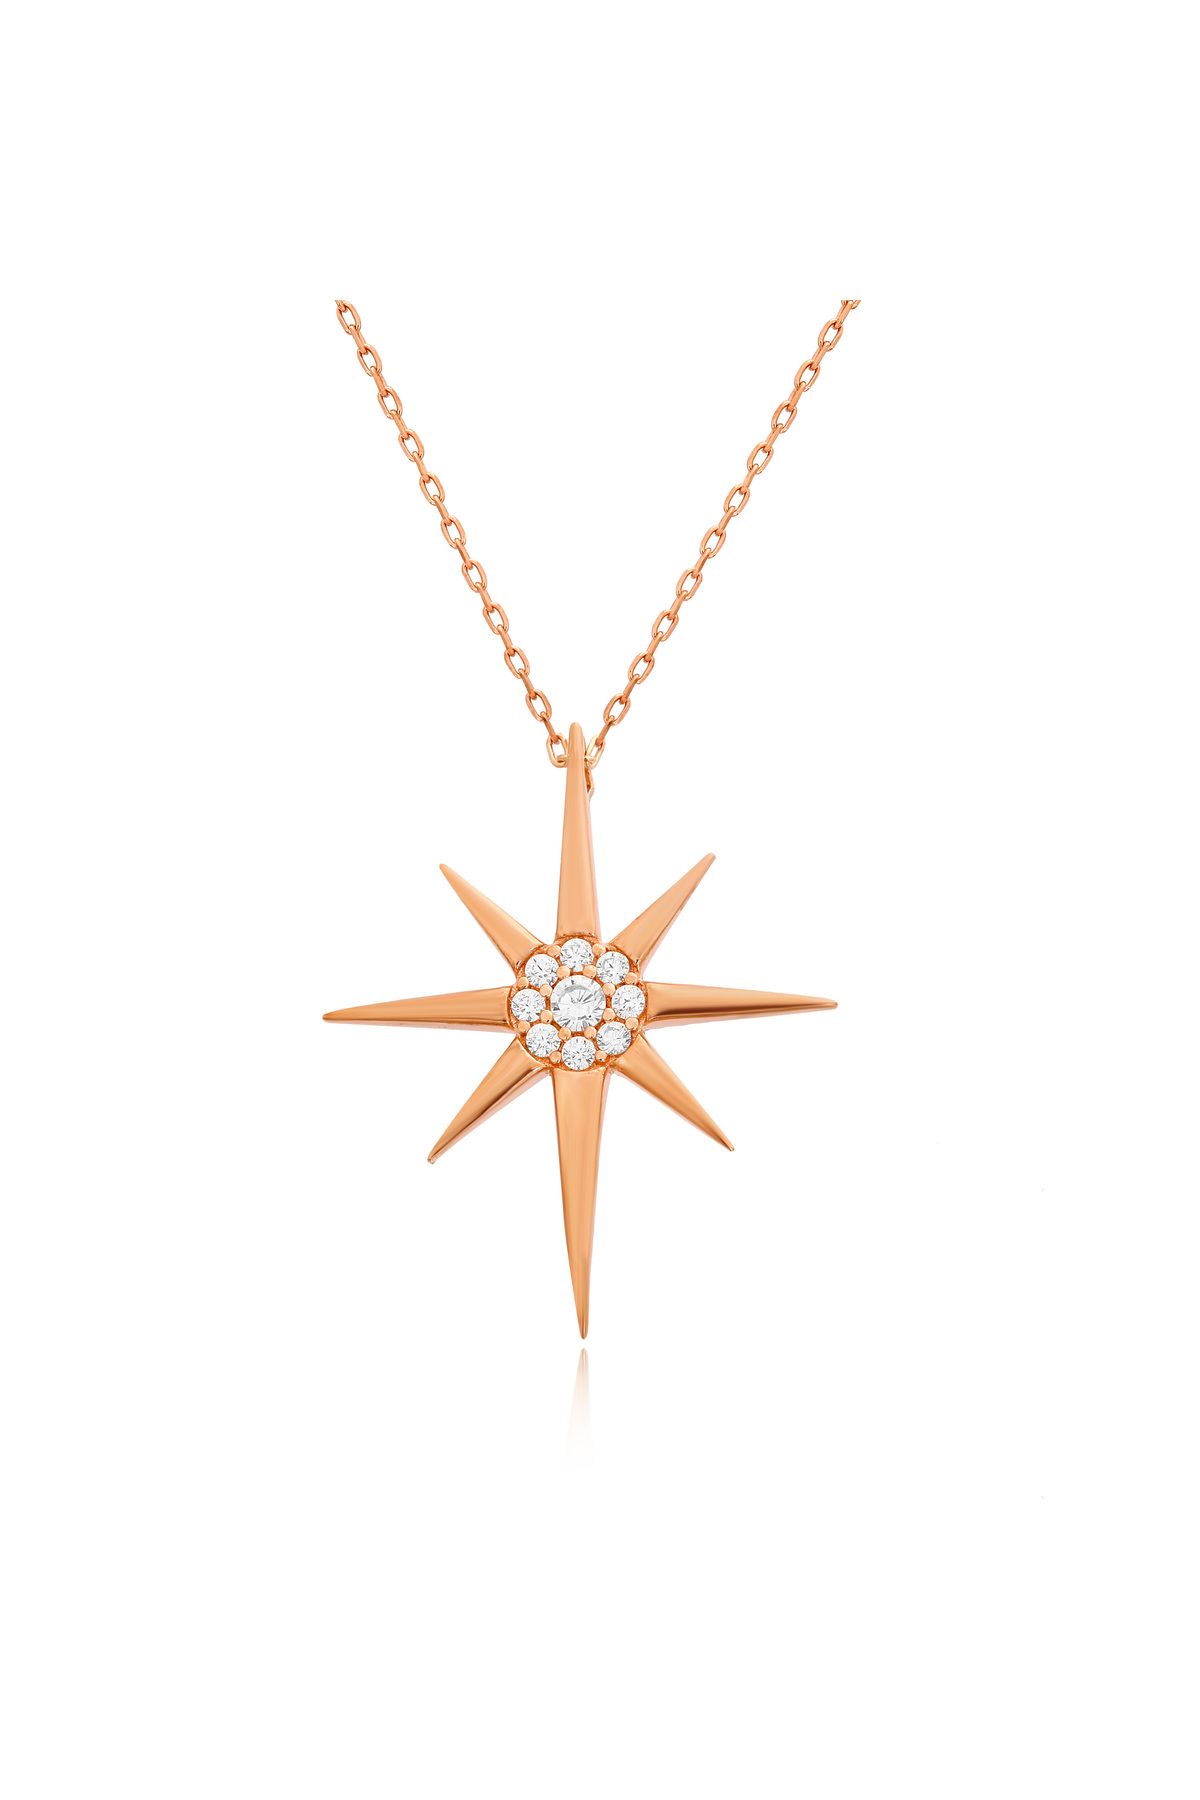 Sahira Jewelry Kutup Yıldızı Taşlı 14 K Rose Altın Kaplama Kadın Kolye